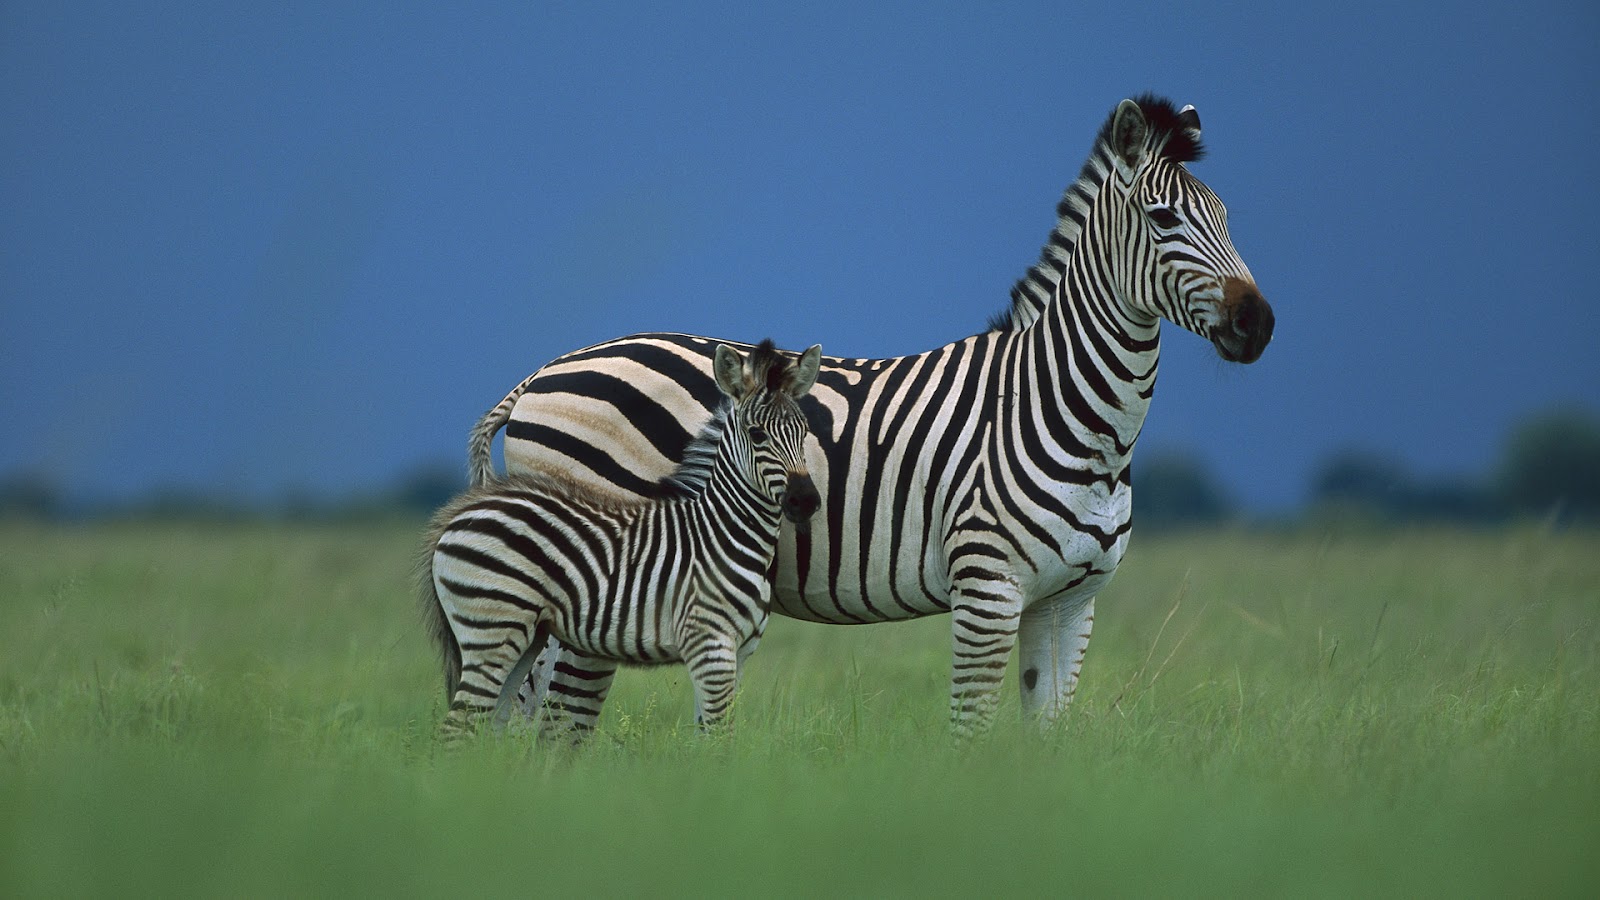 Zebra Hd Wallpaper - Zebra In A Field , HD Wallpaper & Backgrounds